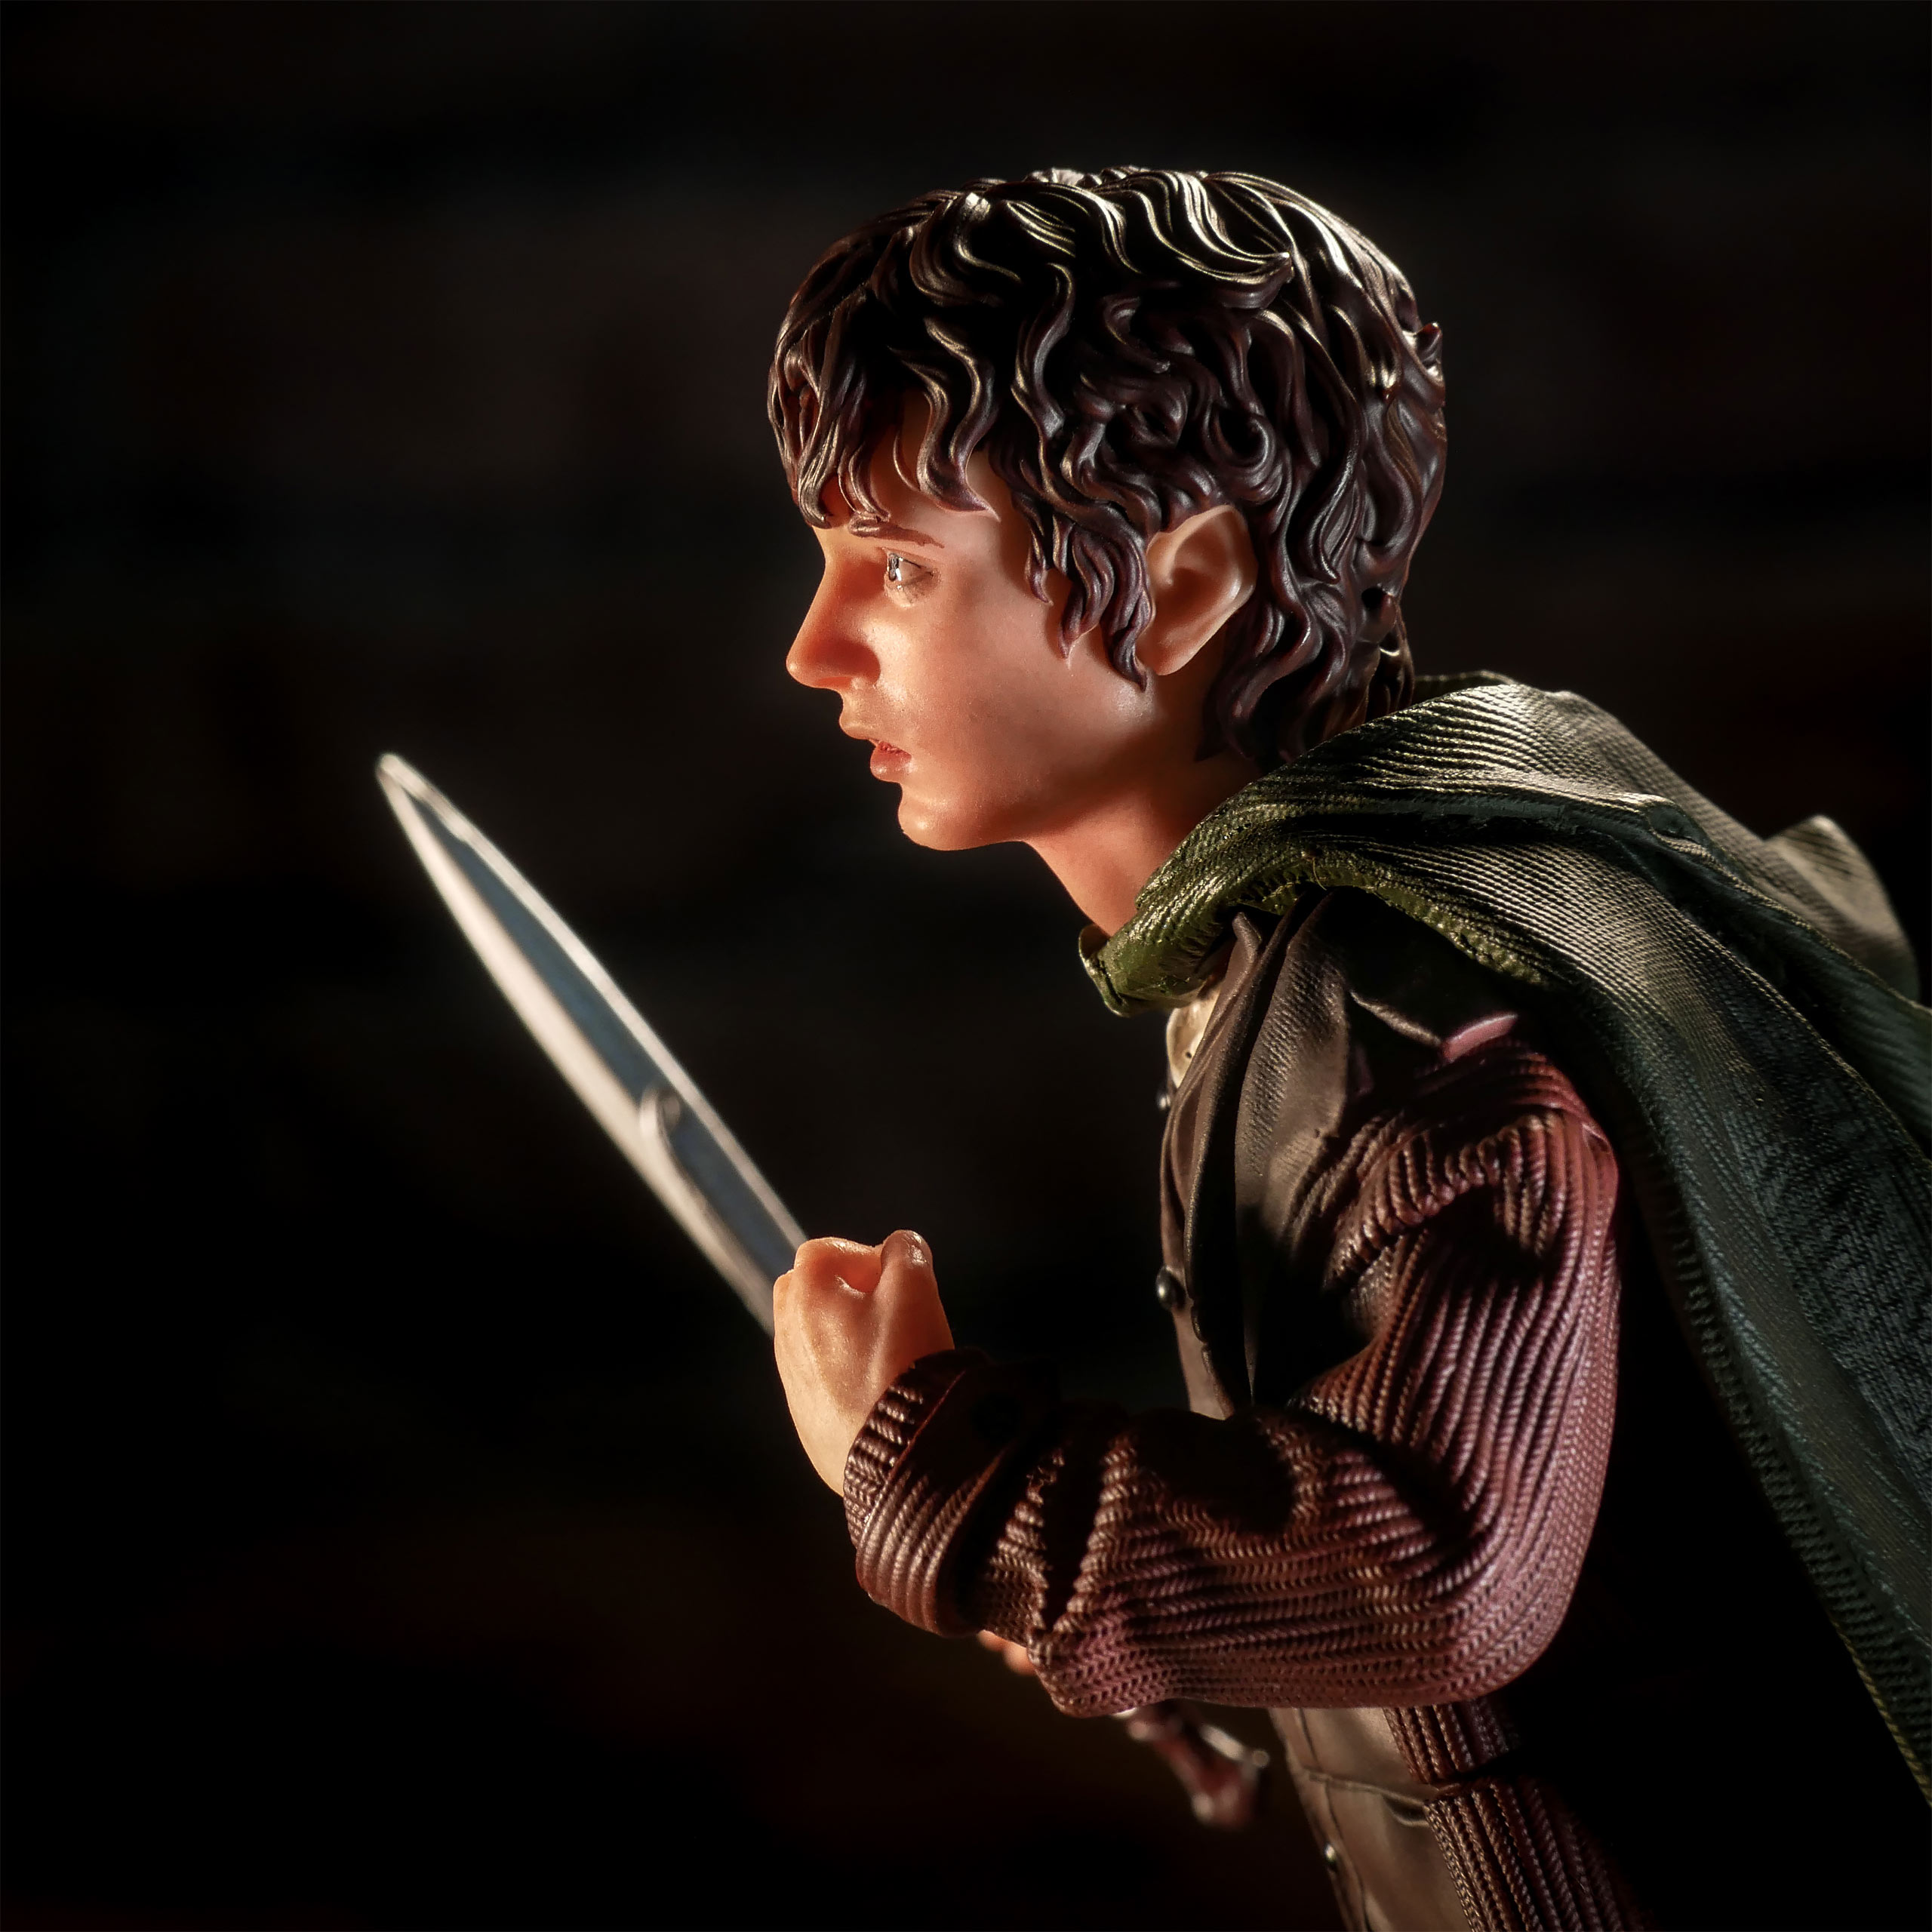 Heer der Ringen - Frodo BDS Art Scale Deluxe Beeldje 14 cm